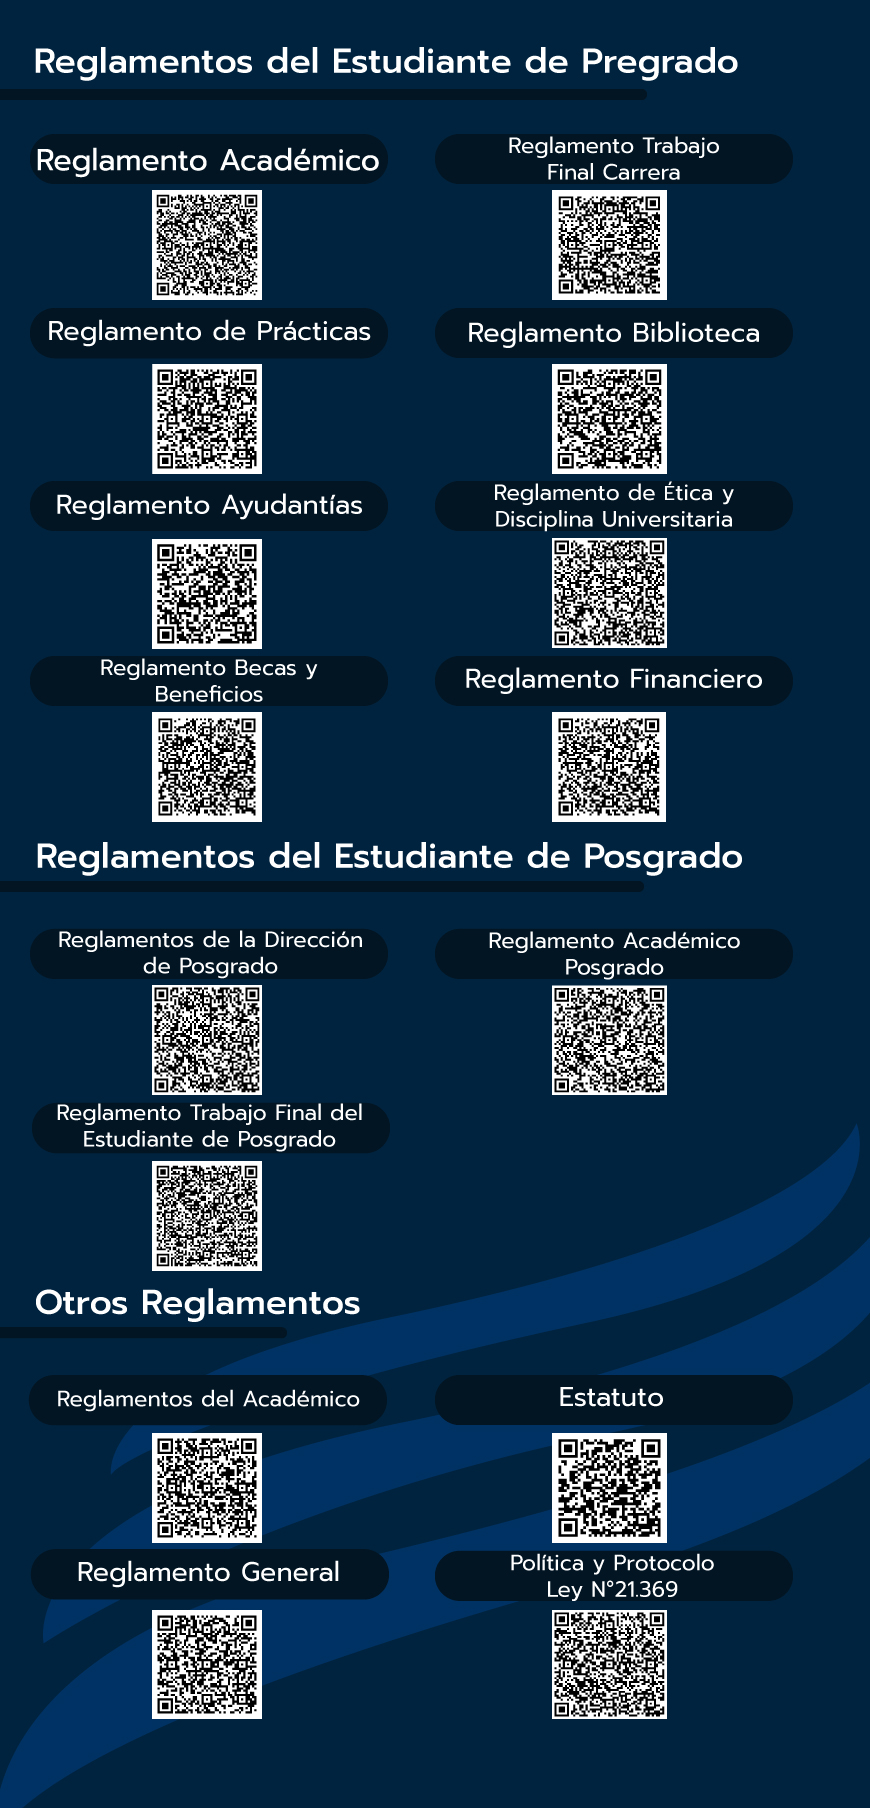 Imagen que contiene códigos qr que llevan a los distintos reglamentos de la Universidad